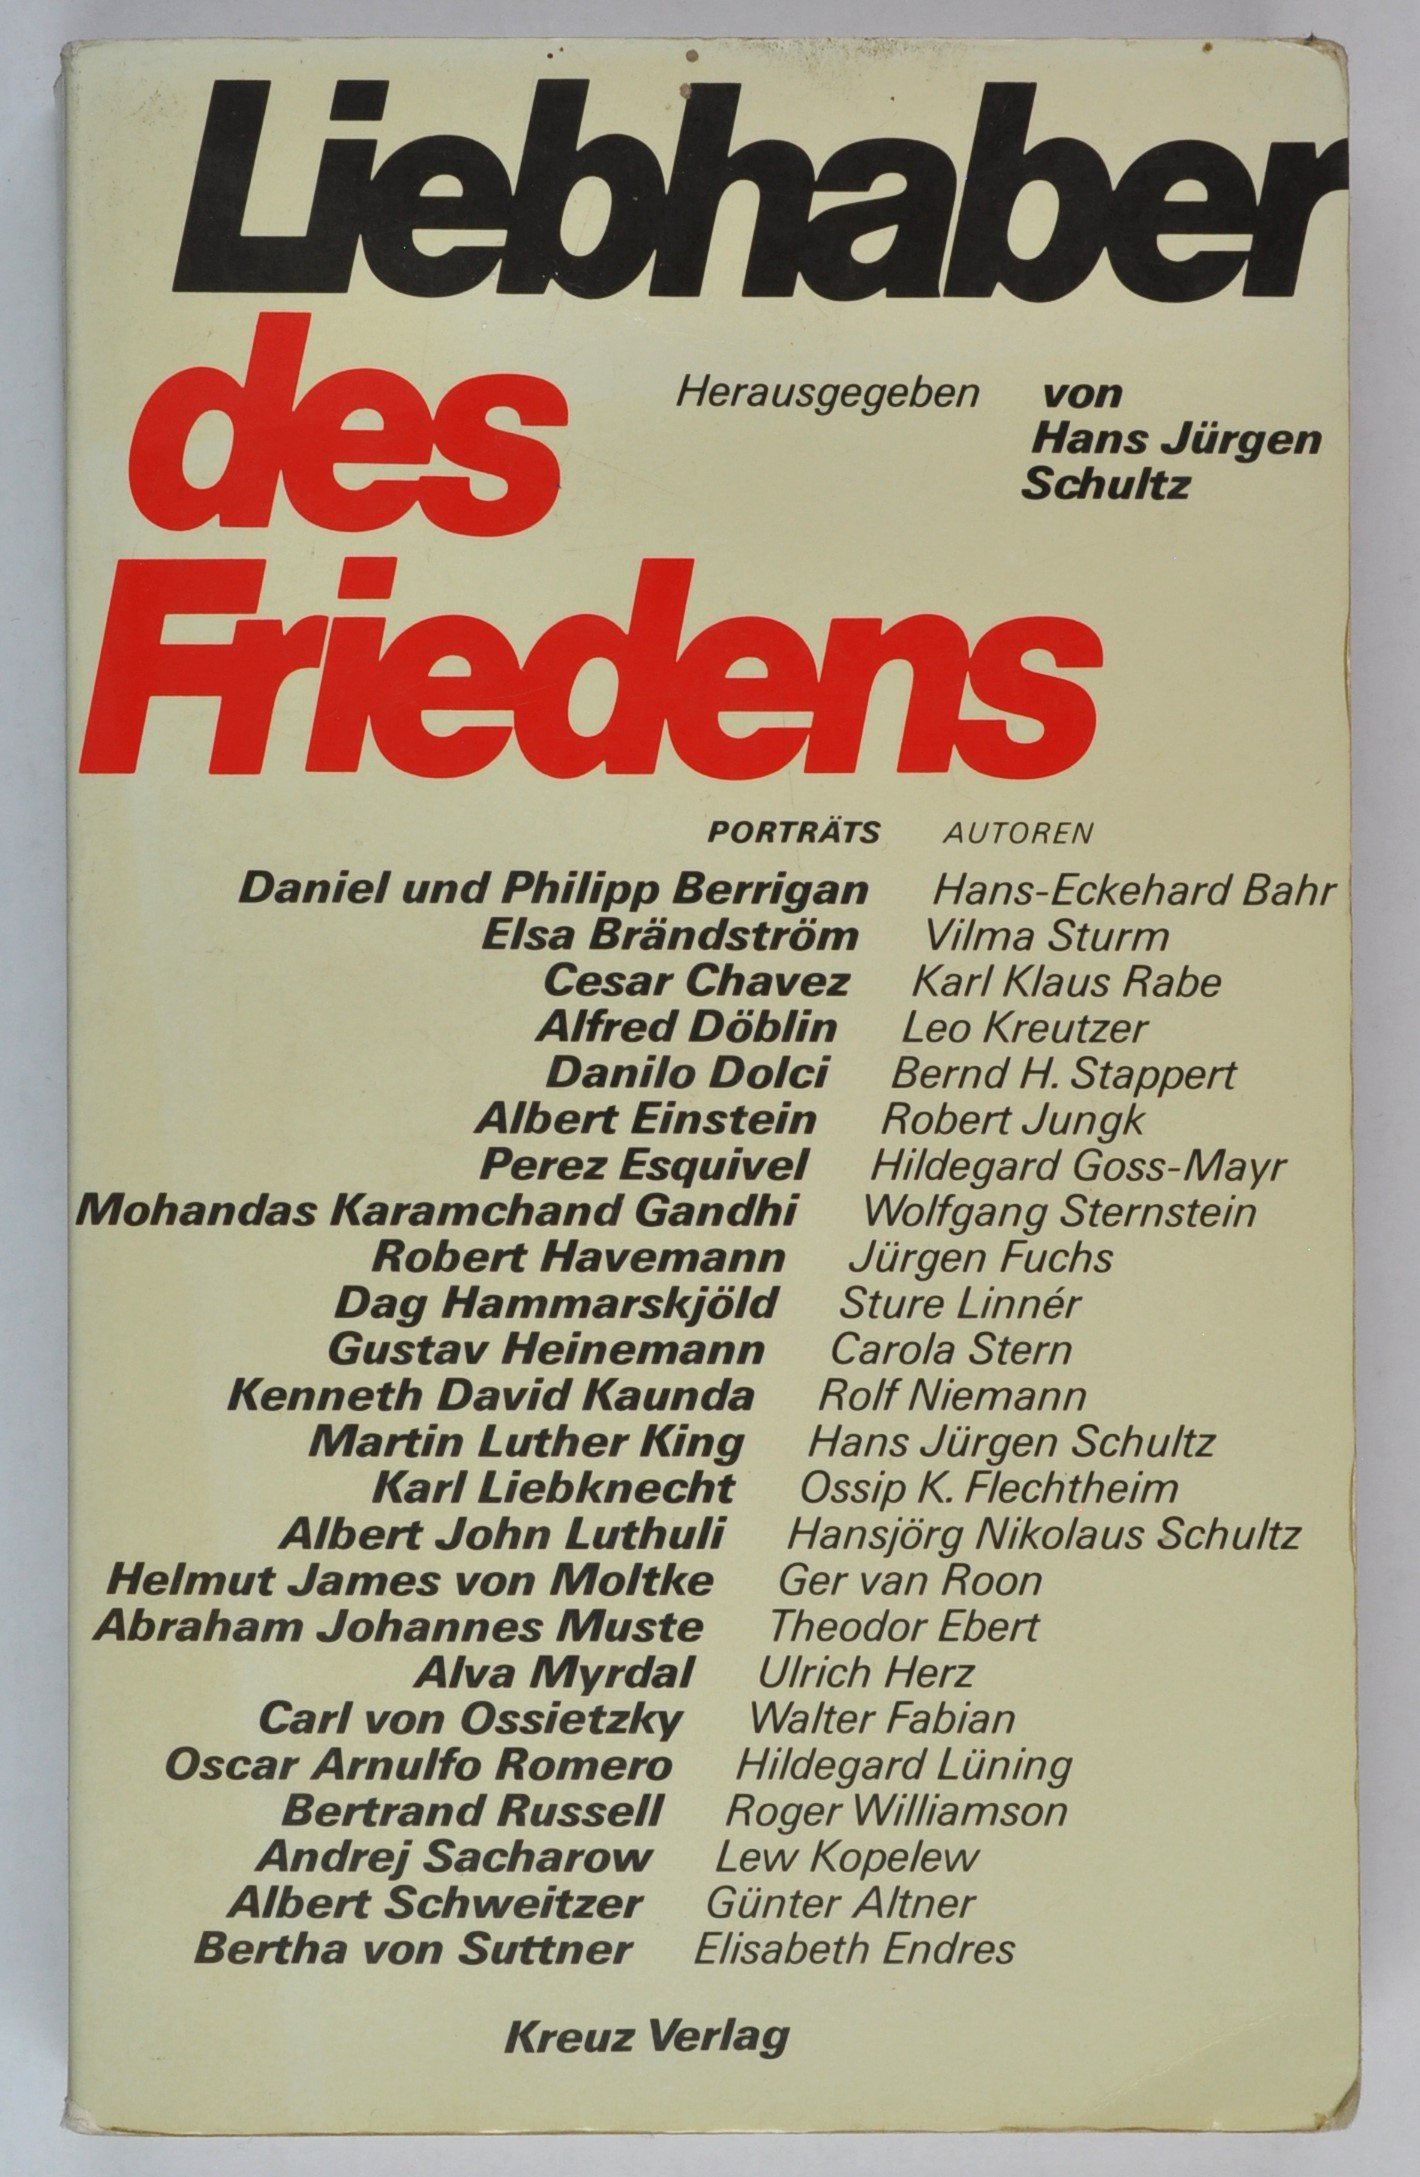 Buch: Liebhaber des Friedens, hg. v. Hans Jürgen Schultz, Stuttgart 1982 (DDR Geschichtsmuseum im Dokumentationszentrum Perleberg CC BY-SA)